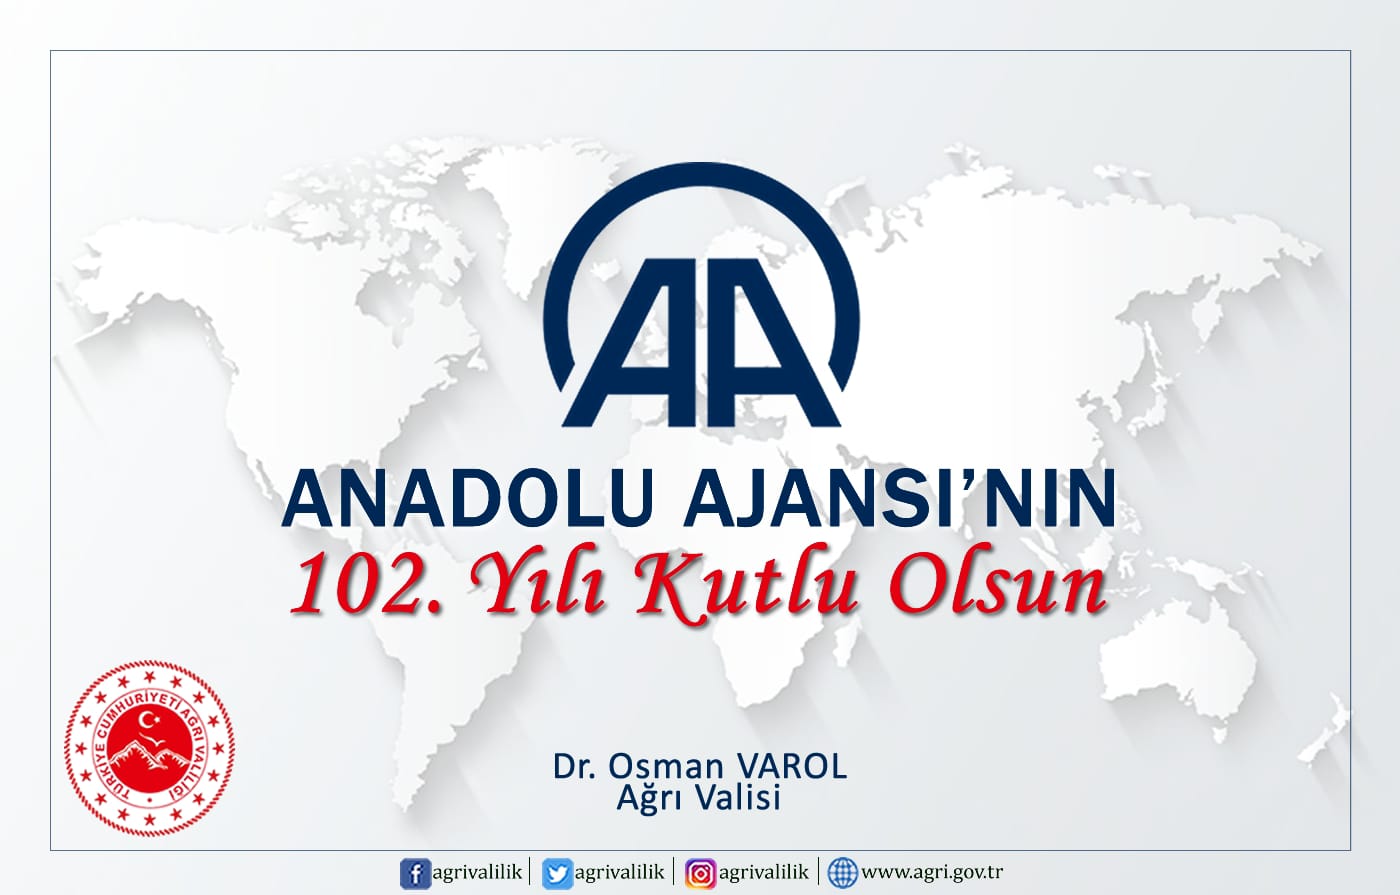 Ağrı Valisi Dr. Osman Varol’un Anadolu Ajansının 102. Kuruluş Yıl Dönümü Kutlama Mesajı